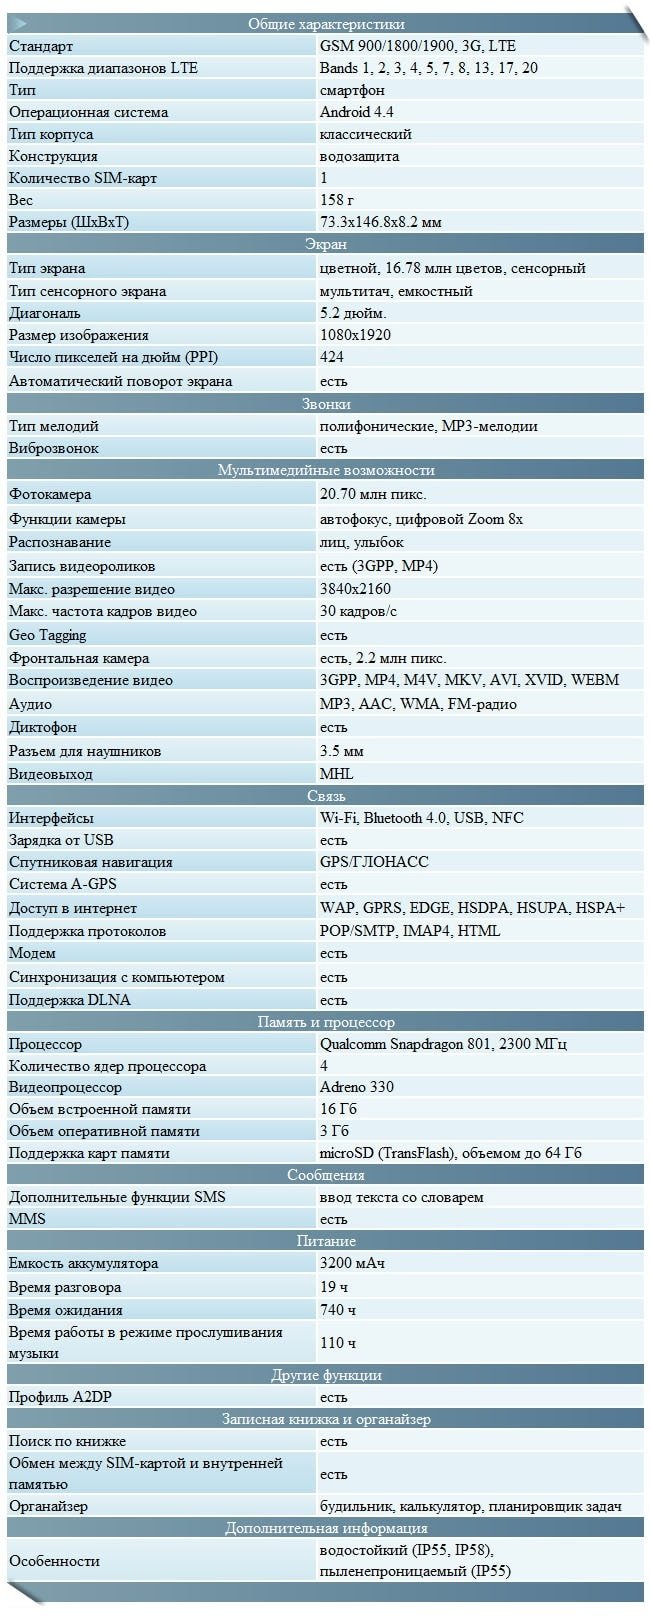  Sony Xperia Z2